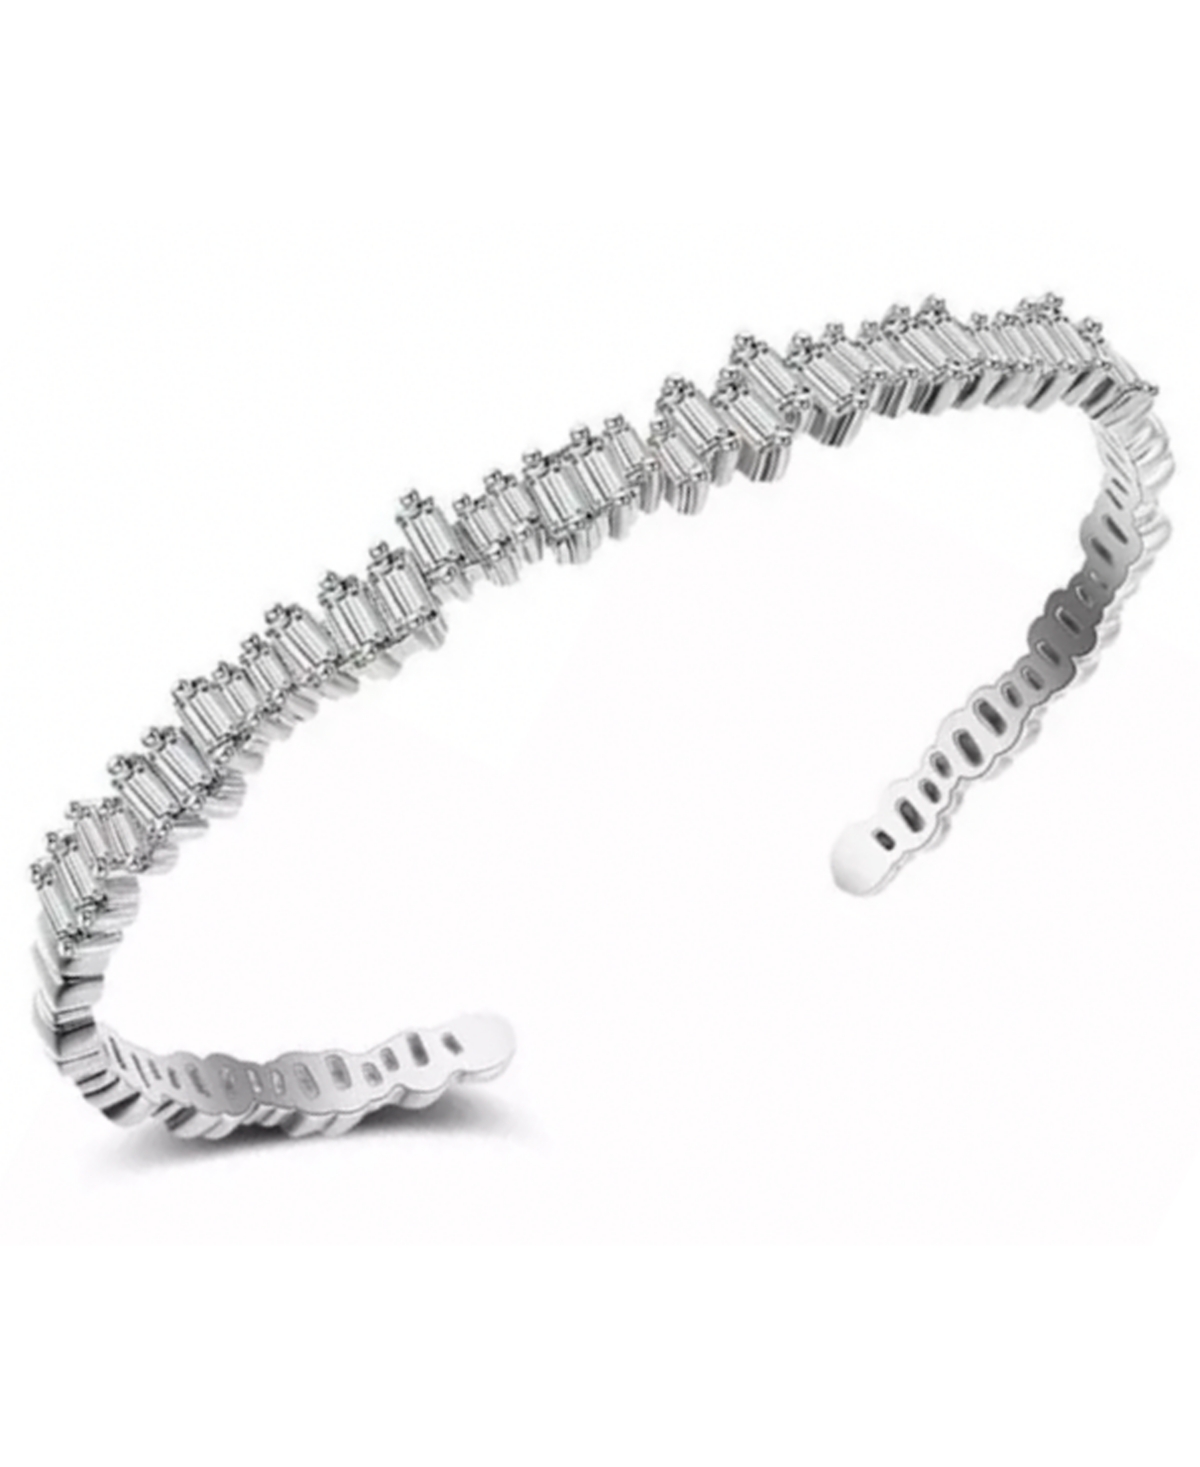 Women's Ice Baguette Cuff Bracelet - Silver Plated